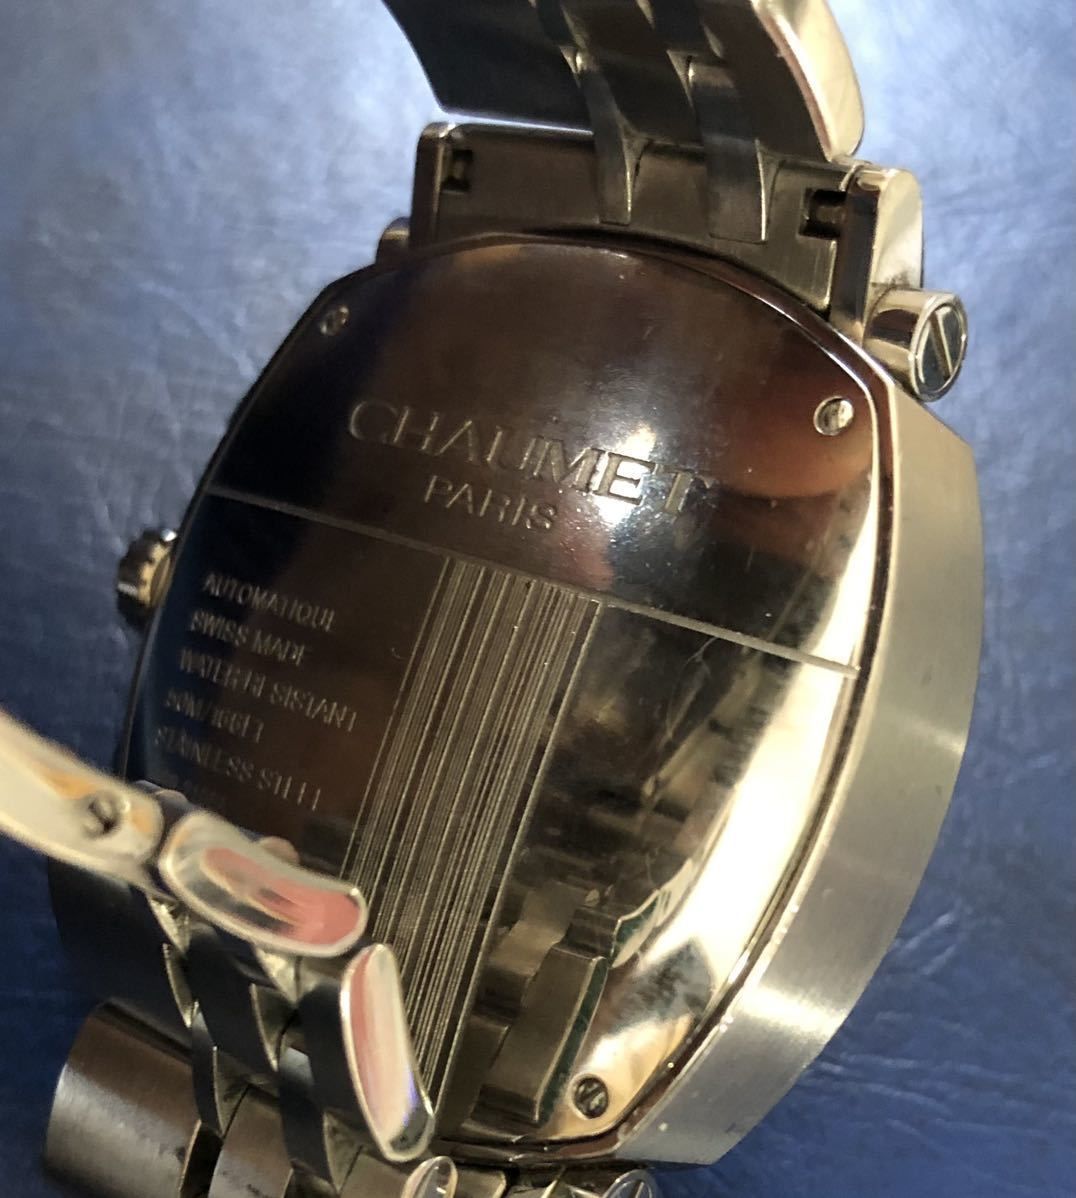 CHAUMET работа товар * Dan ti хронограф Date стандартный товар самозаводящиеся часы Chaumet AT automatique серебряный наручные часы редкий ( управление MT502)